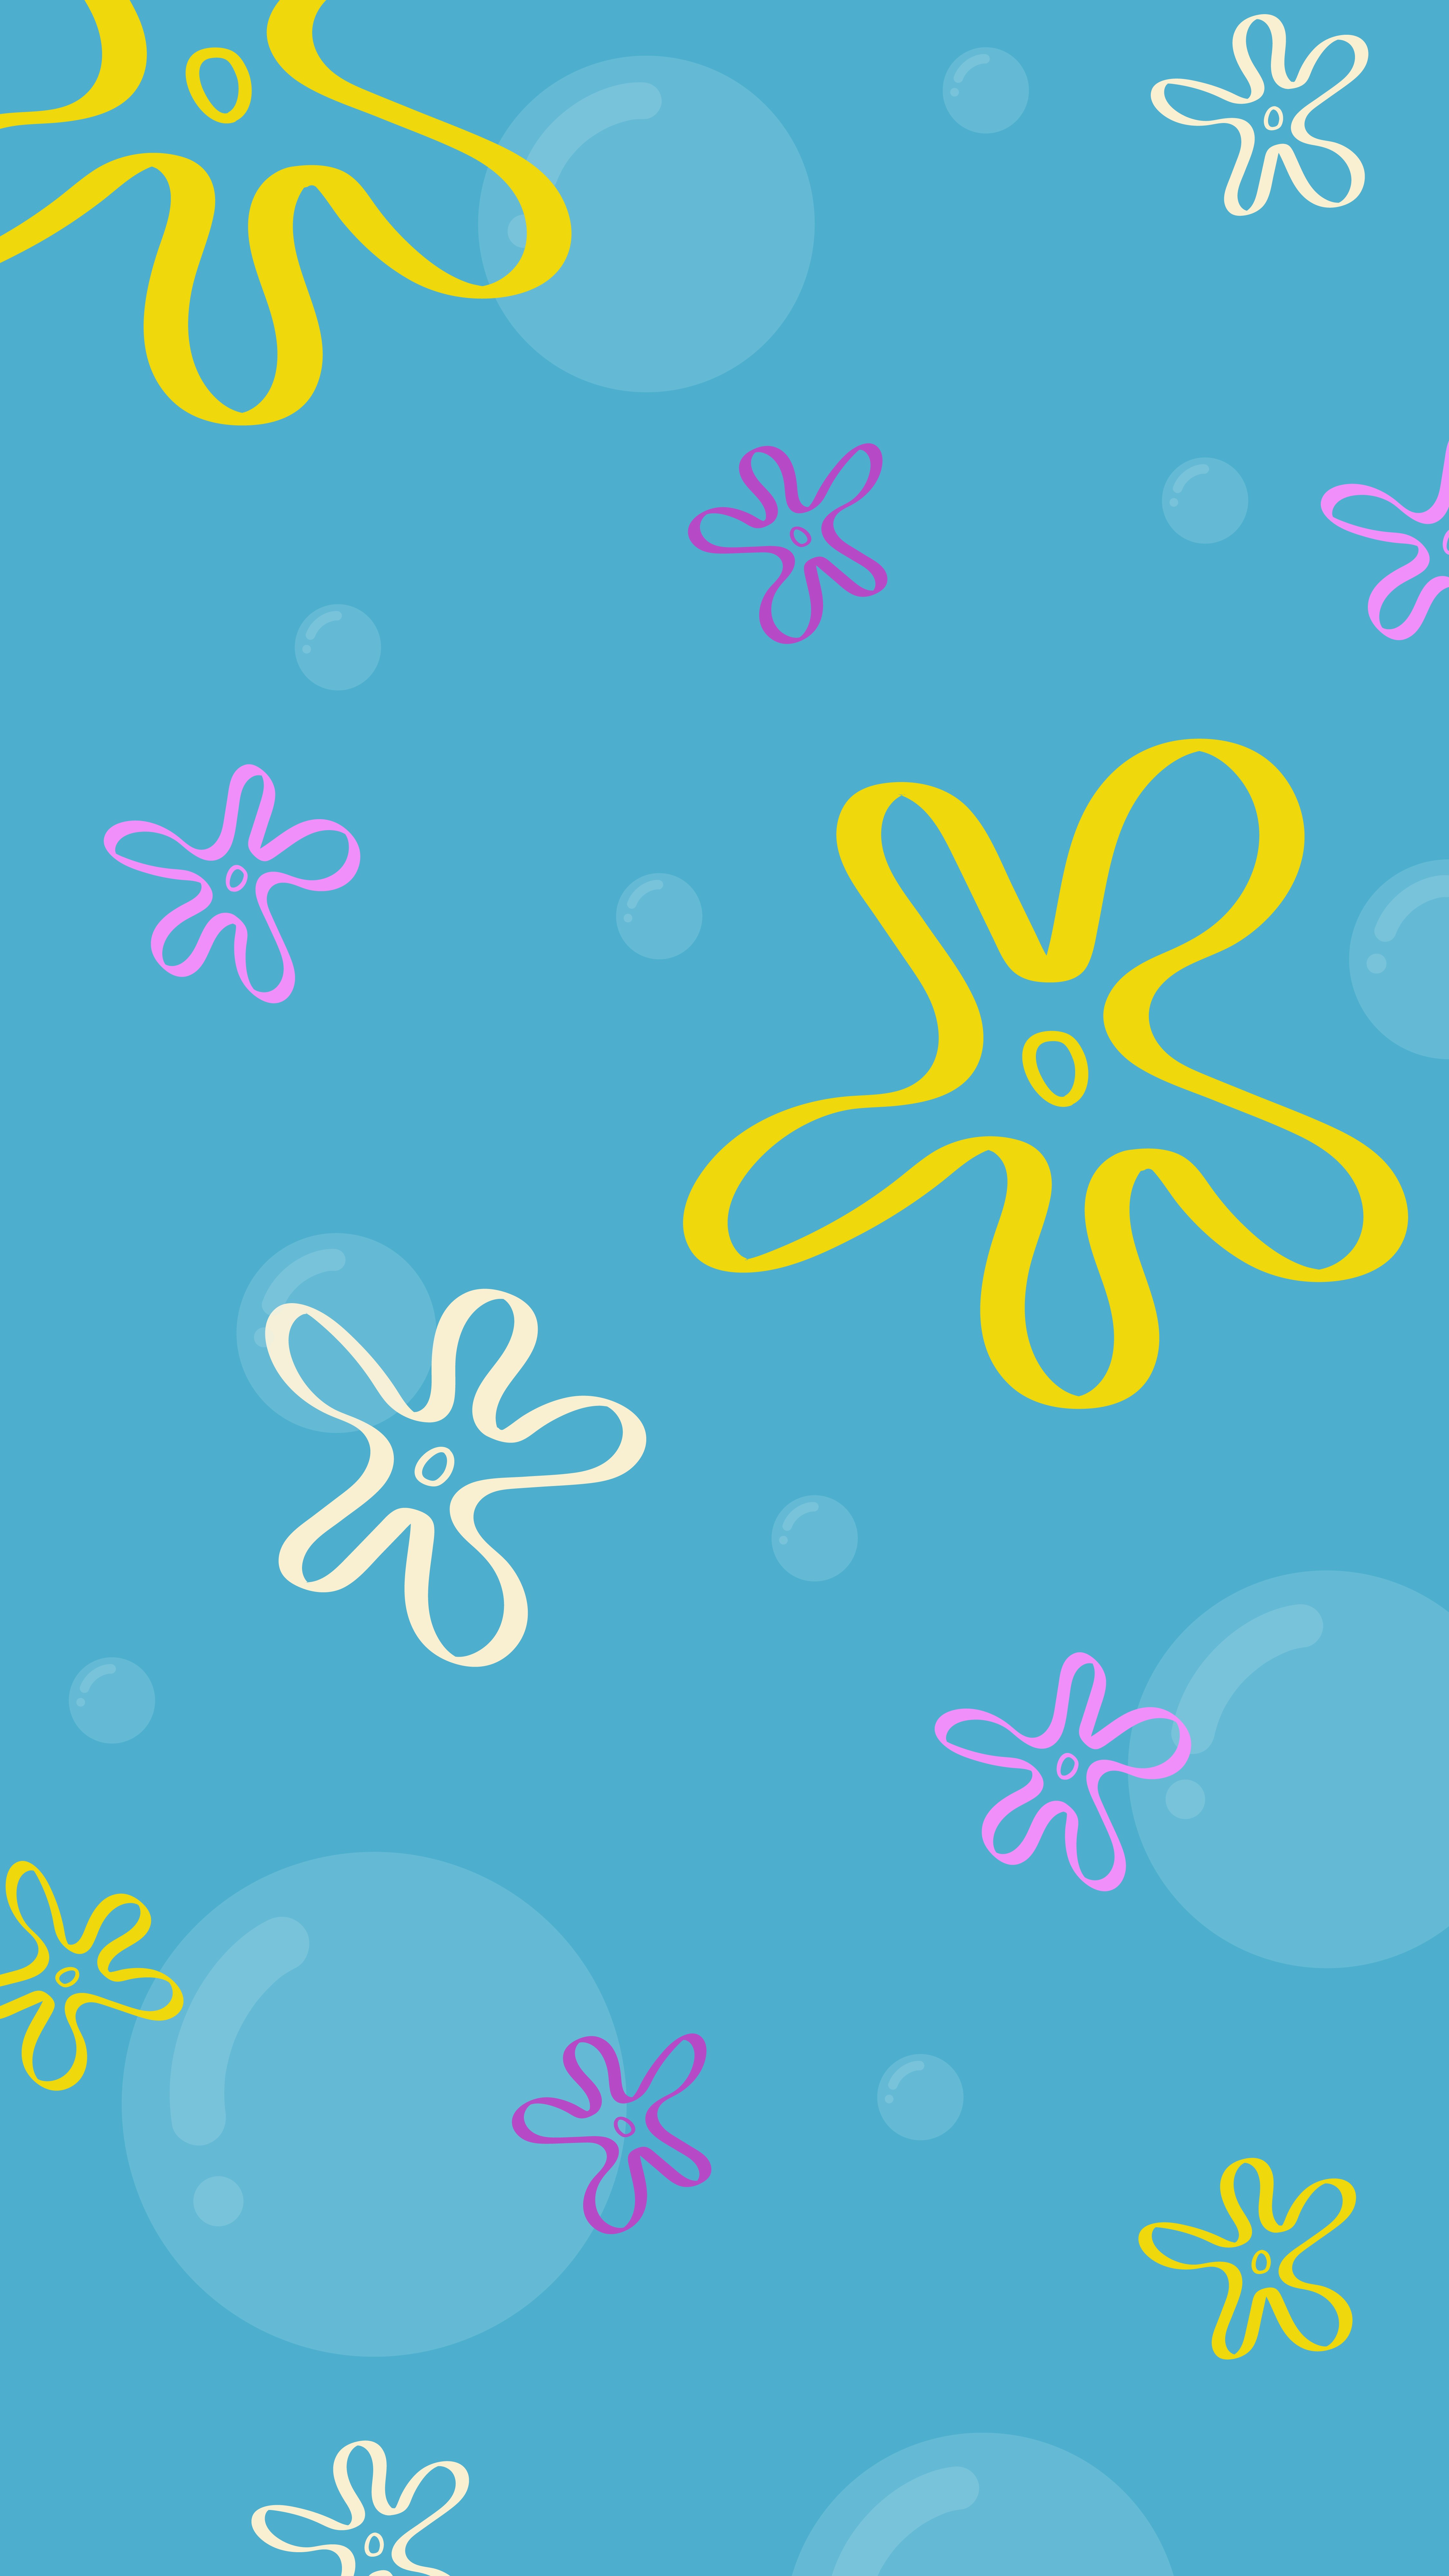 spongebob wallpaper for desktop